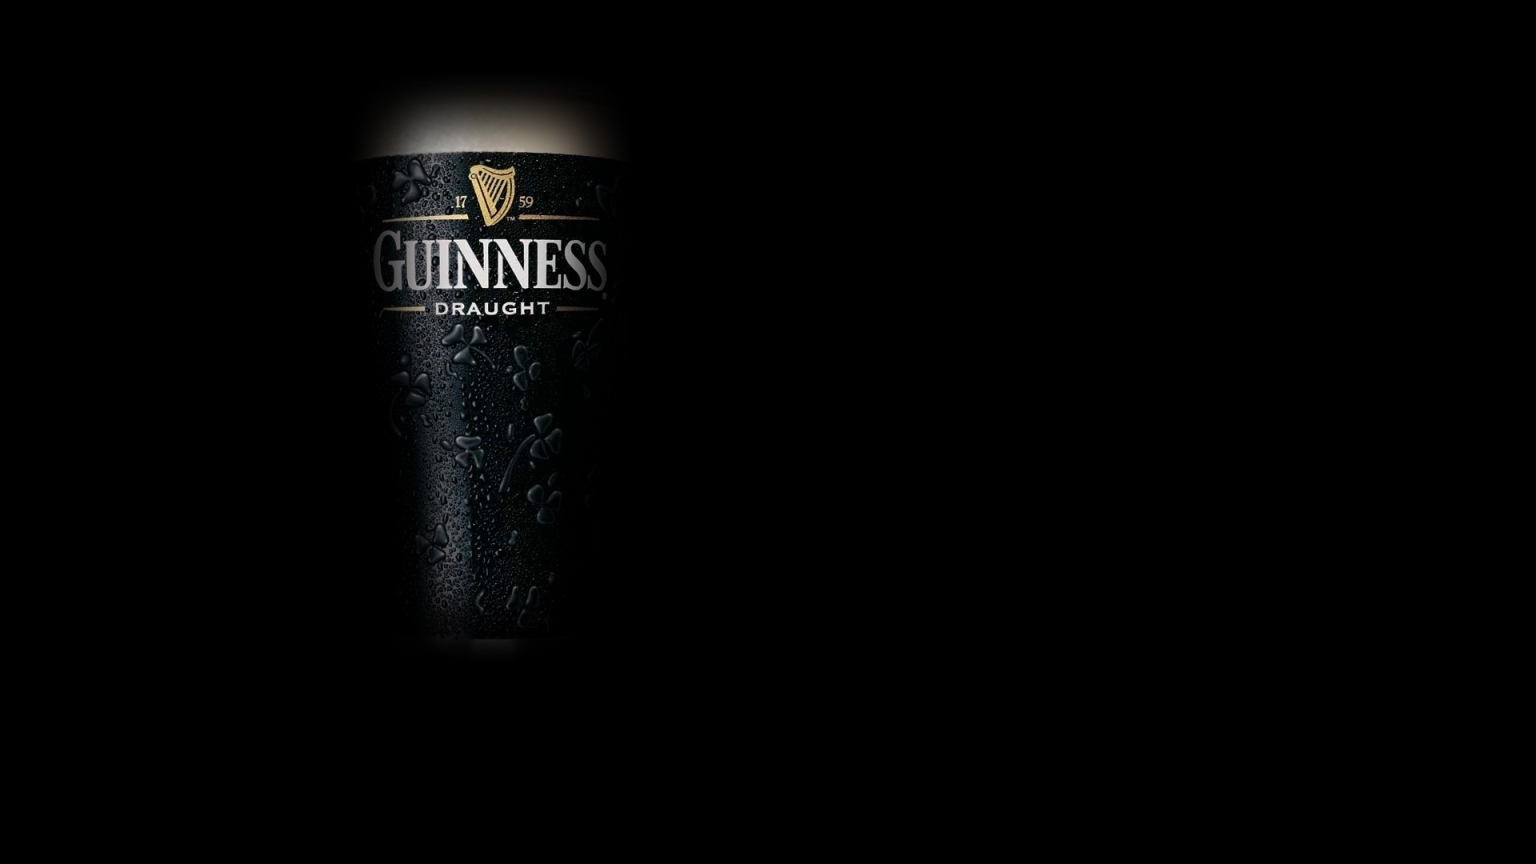 Guinness Beer for 1536 x 864 HDTV resolution